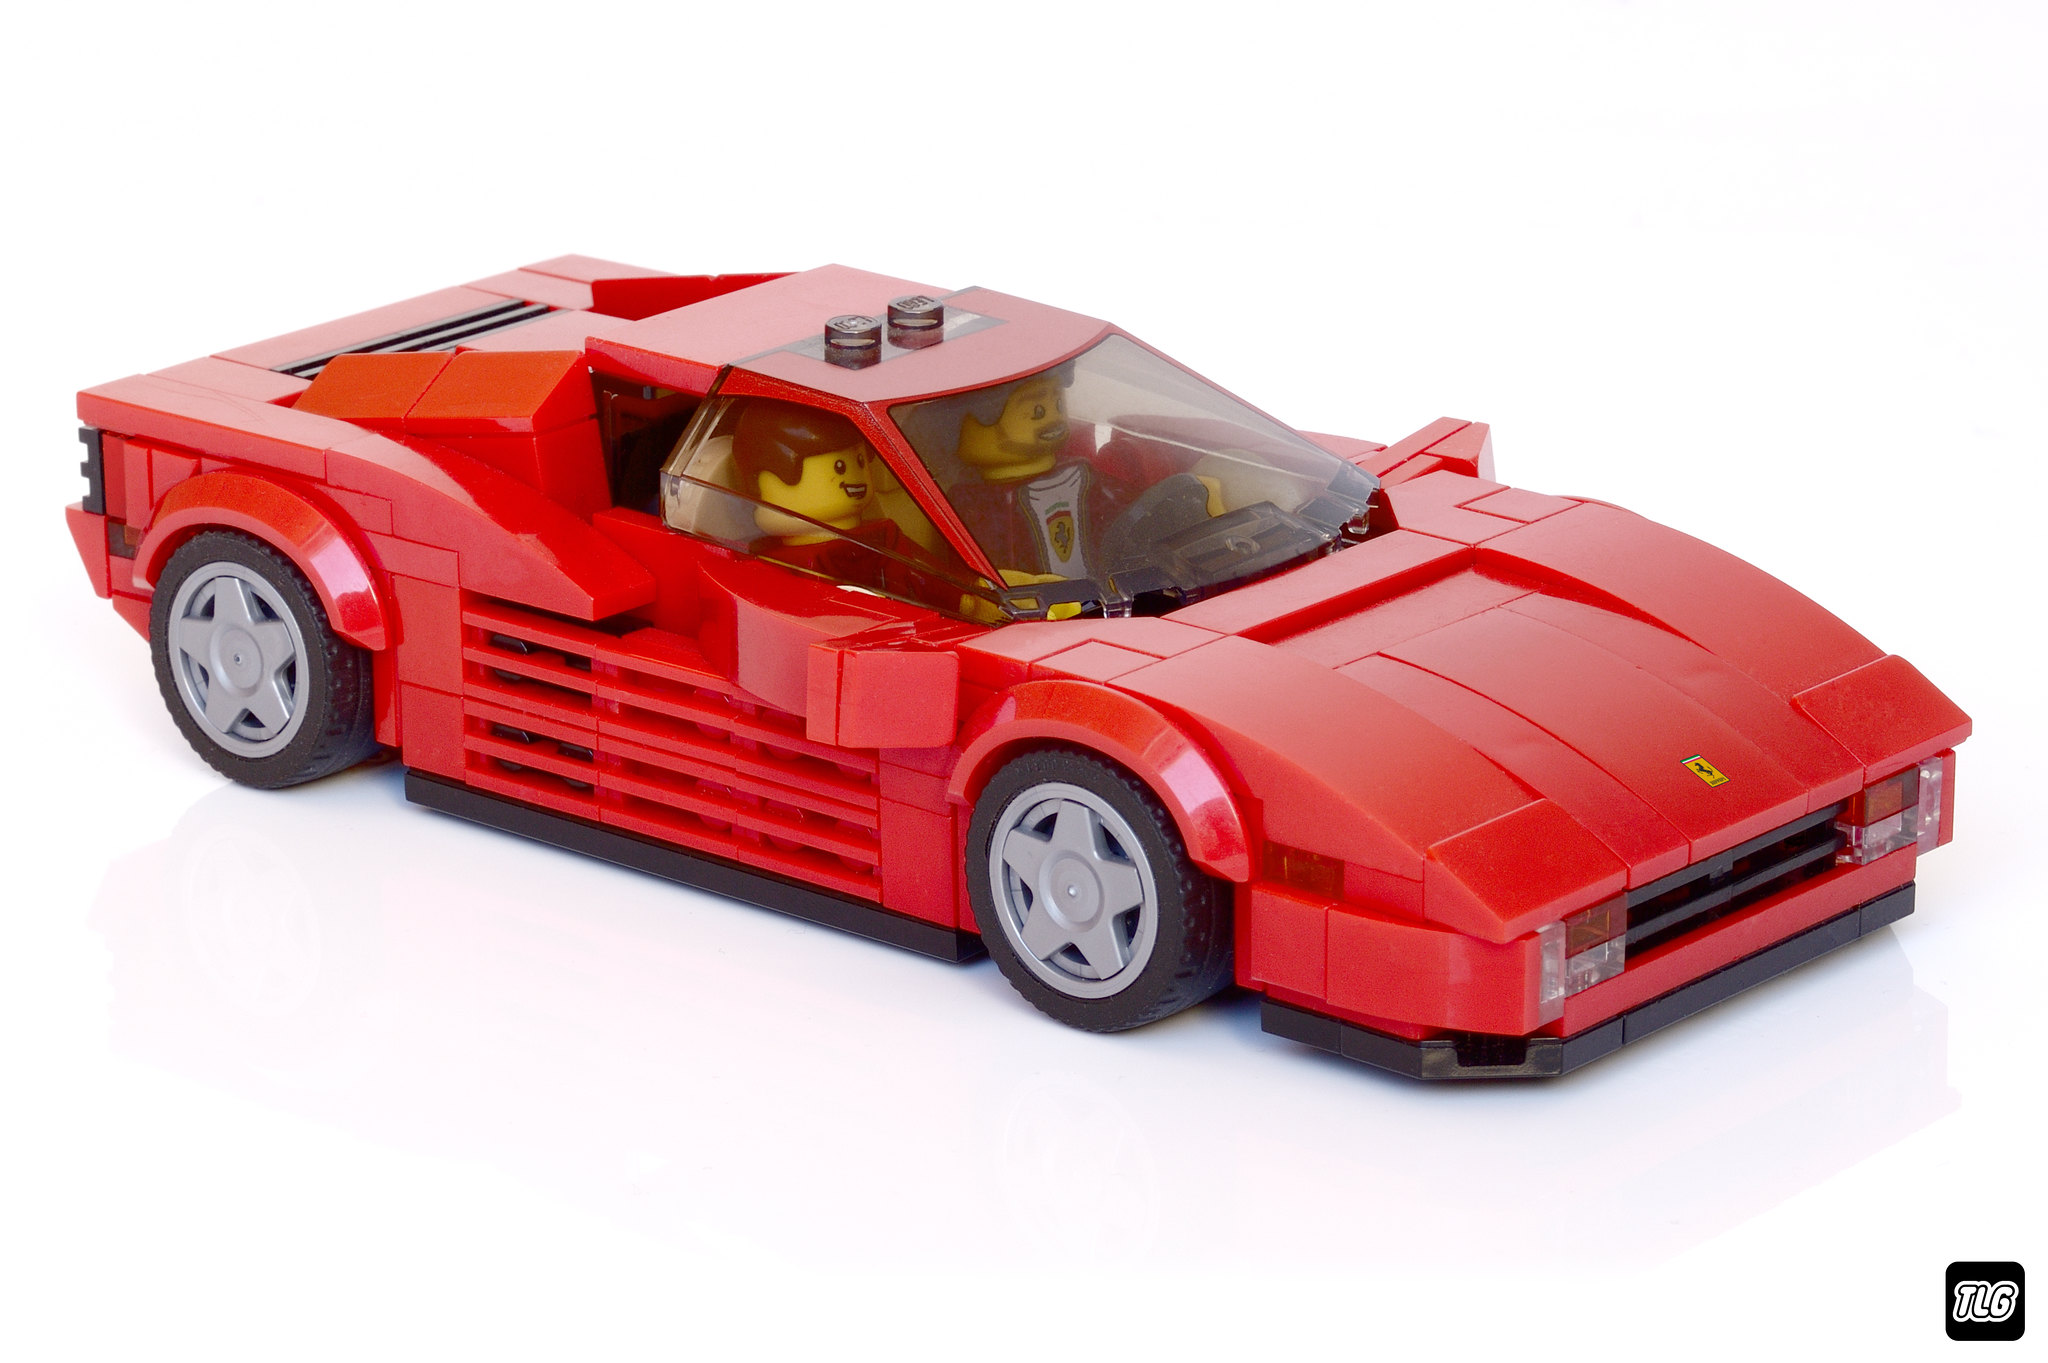 LEGO Ferrari Testarossa MOC